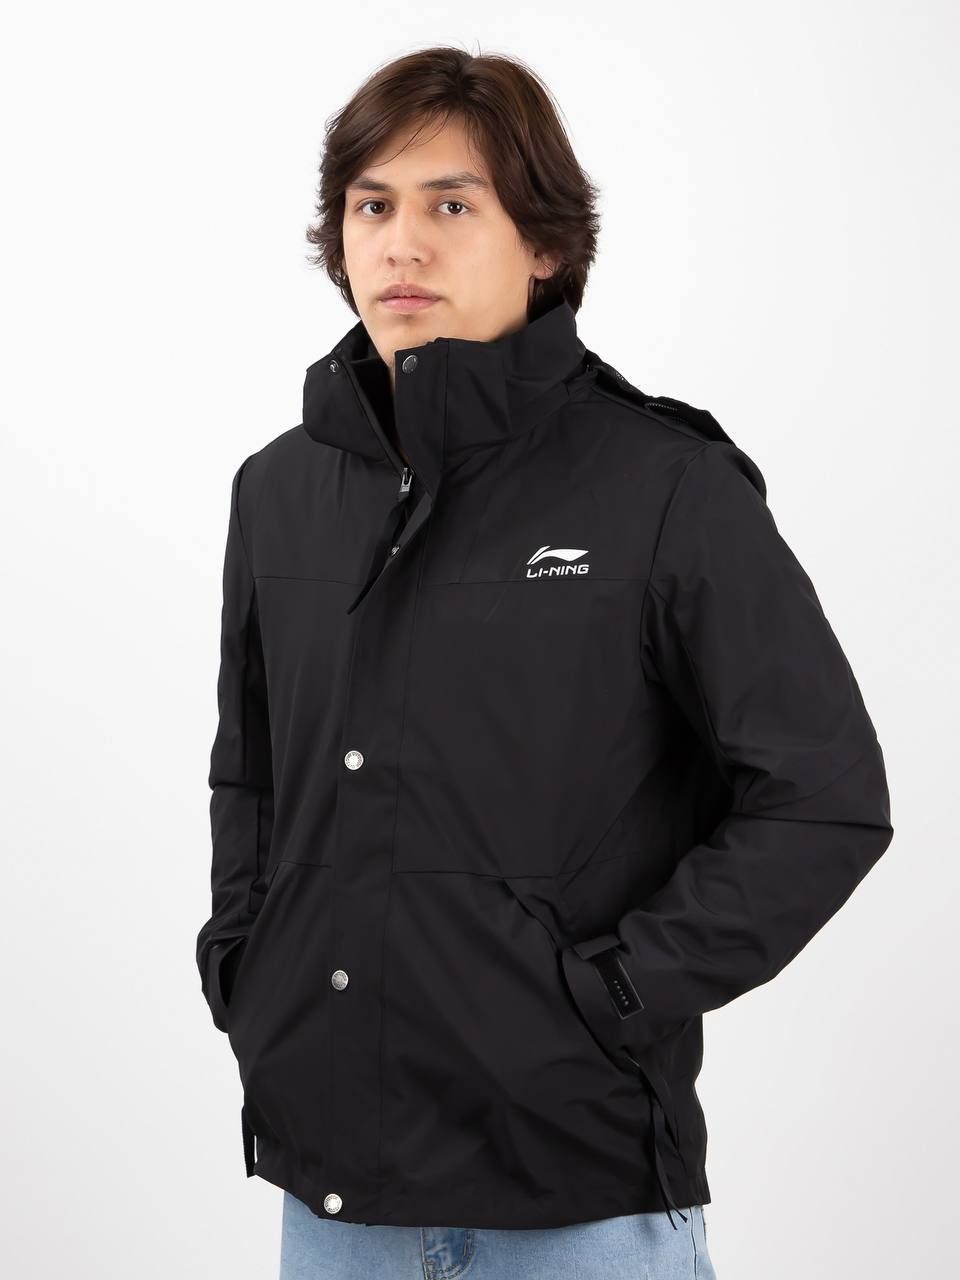 Куртка Li-ning, мужская с капюшоном, дождевик, водонепроницаемая